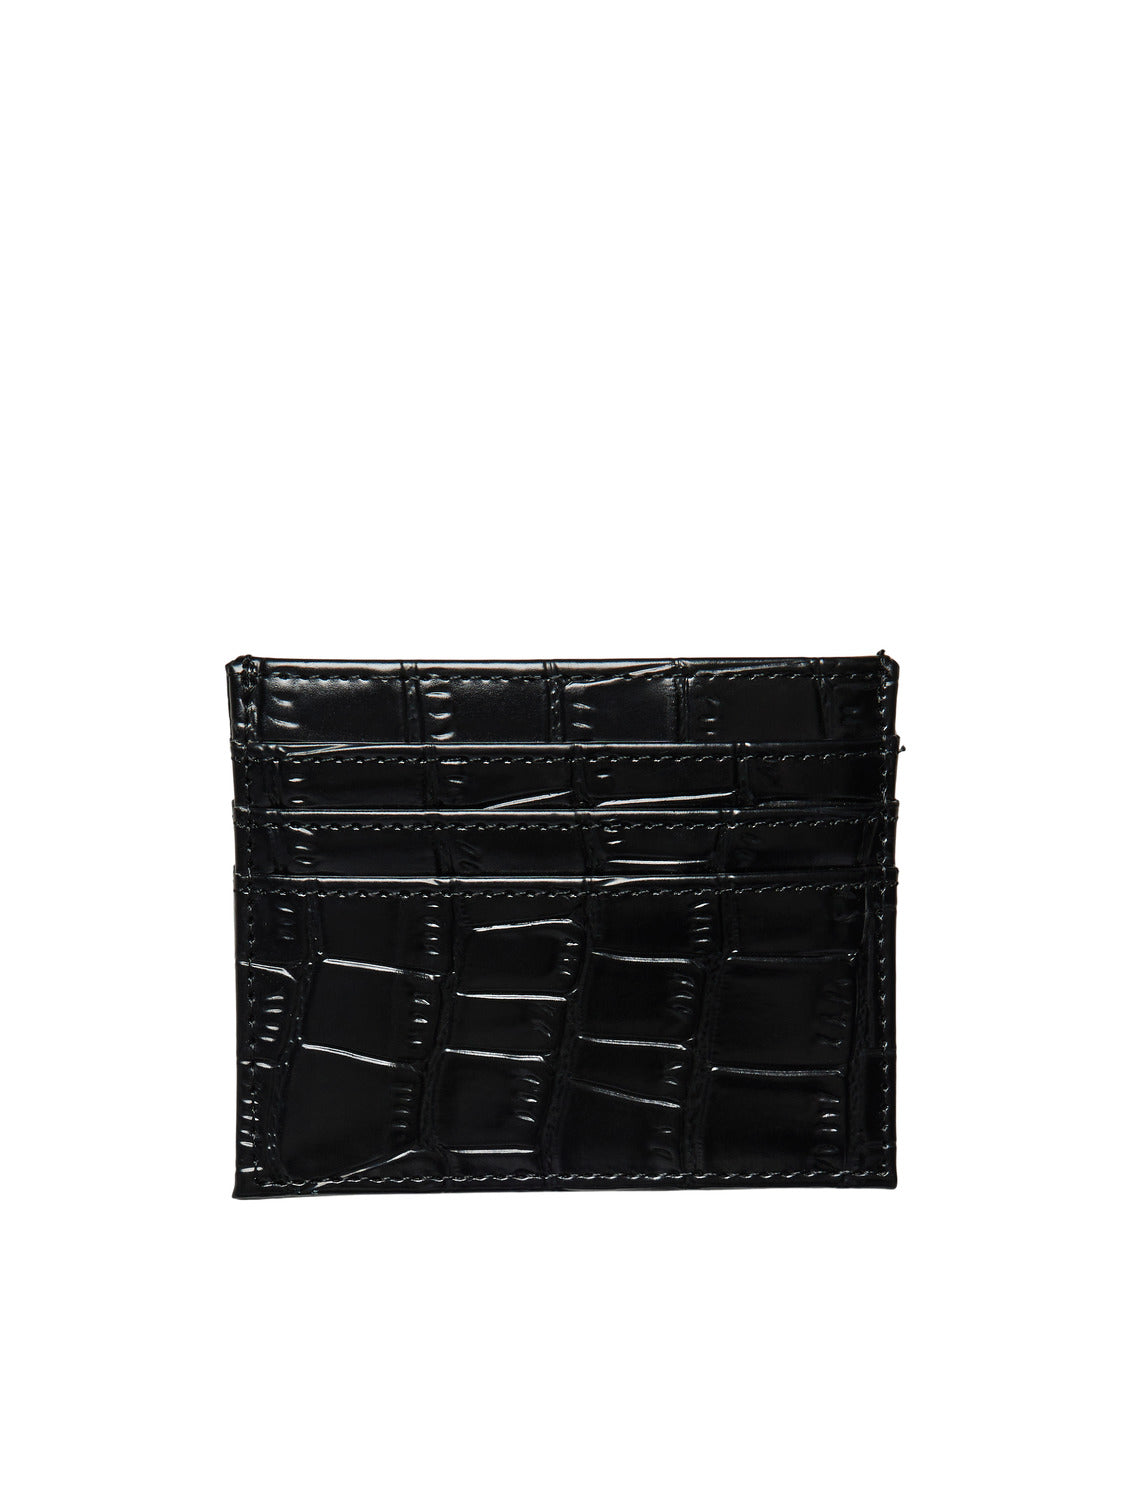 PCBILLA Handbag - Black